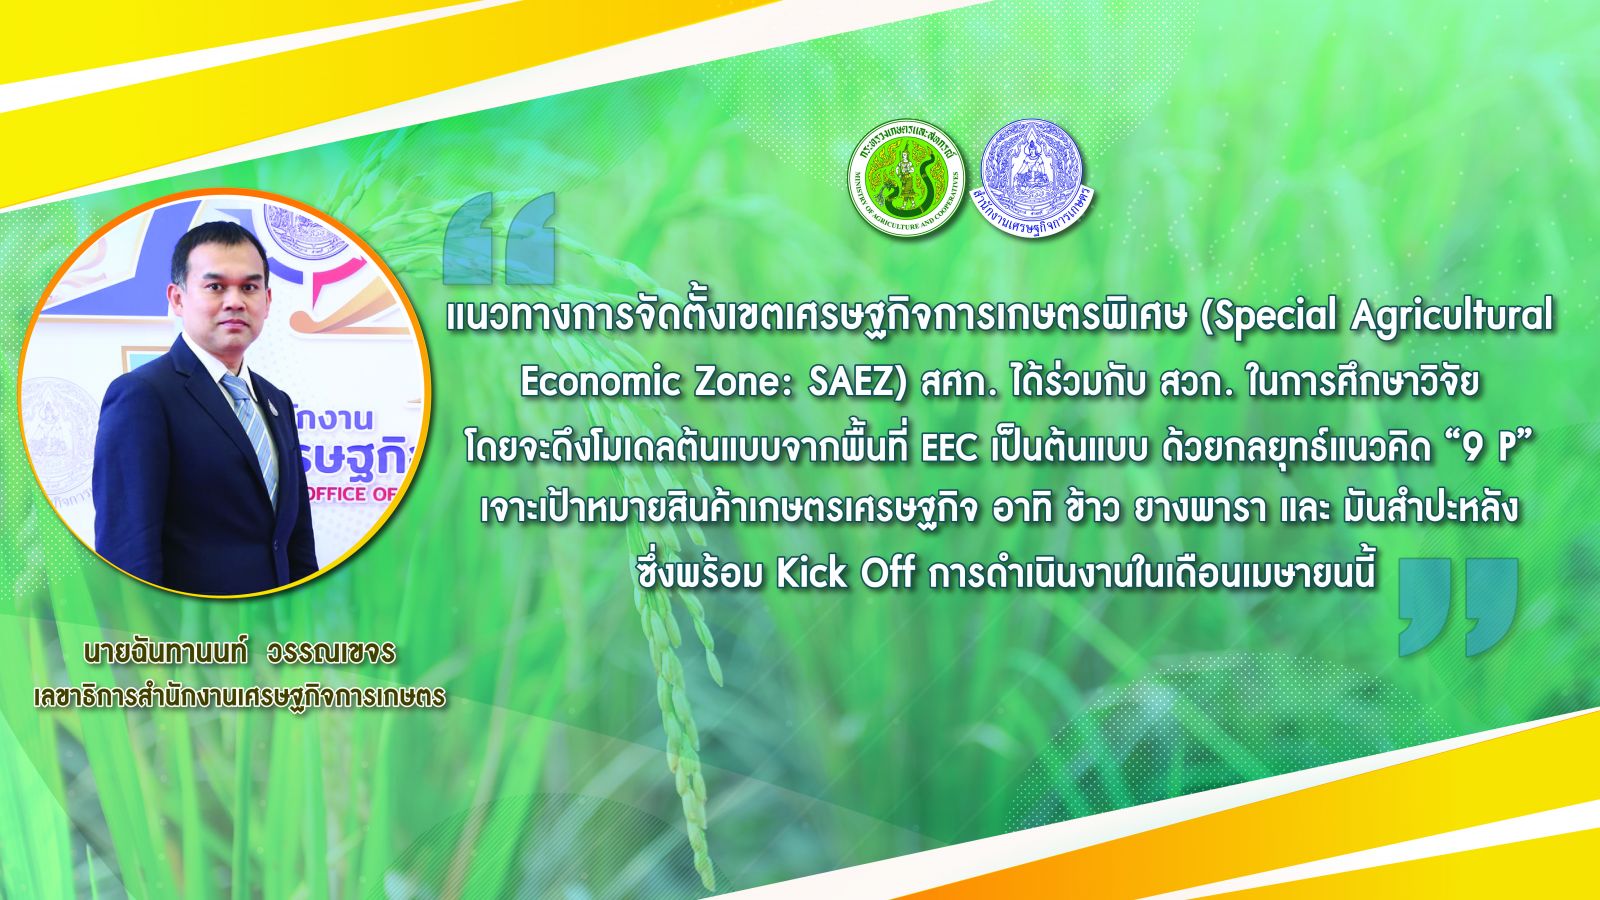 สศก. จับมือภาคี สวก. และ ม.หอการค้าไทย เดินหน้าจัดตั้งเขตเศรษฐกิจการเกษตรพิเศษของประเทศ ชู กลยุทธ์ 9P สู่ความสำเร็จ  พร้อม Kick Off เม.ย. 64